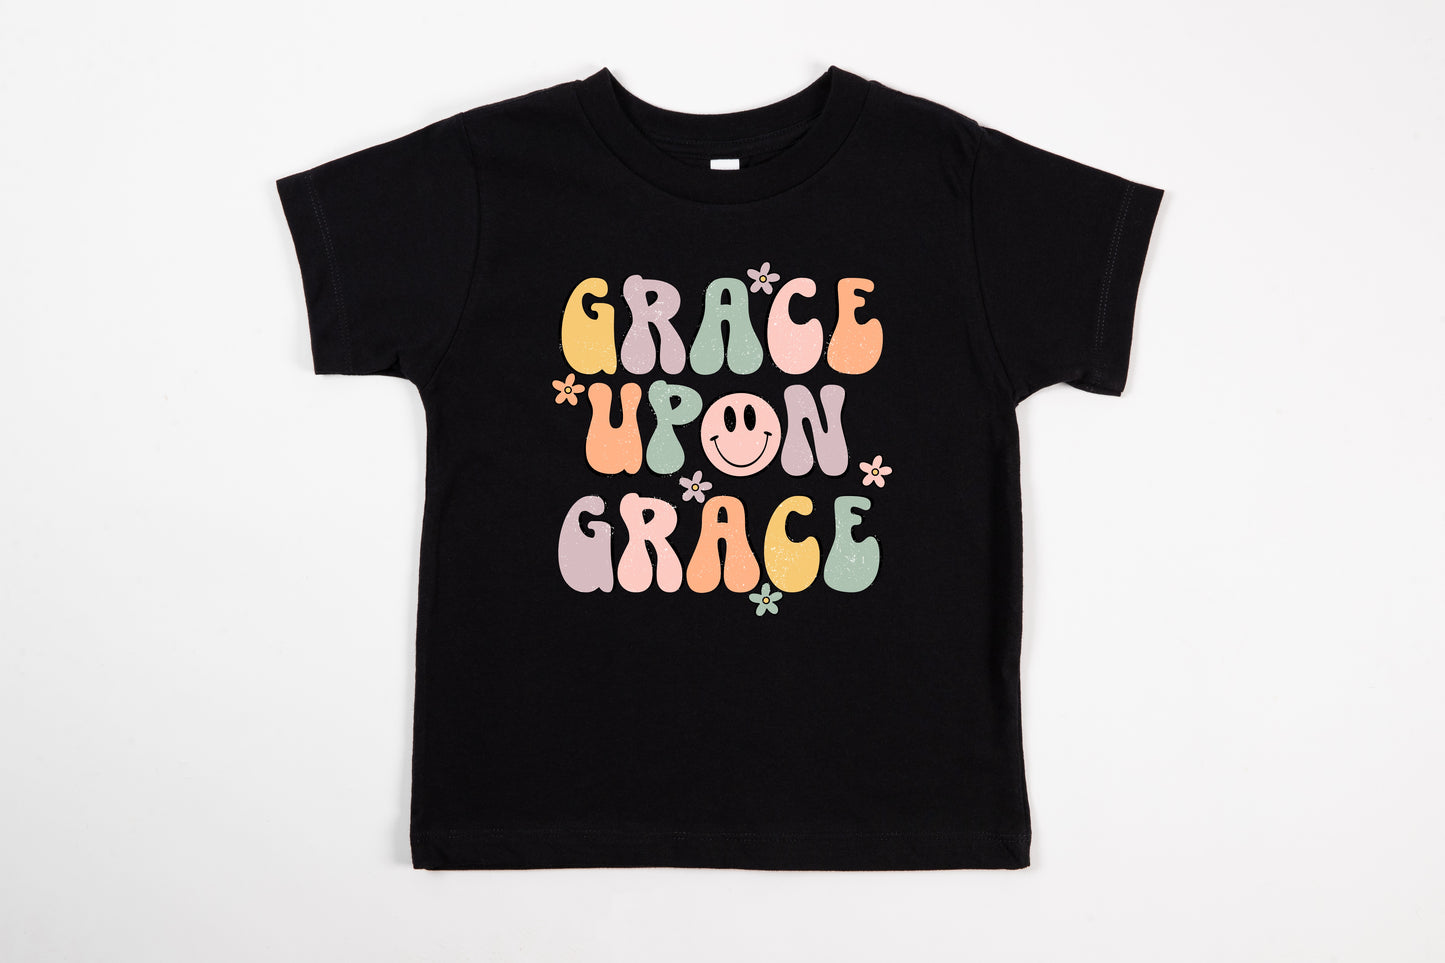 Grace Upon Grace Children’s Tee